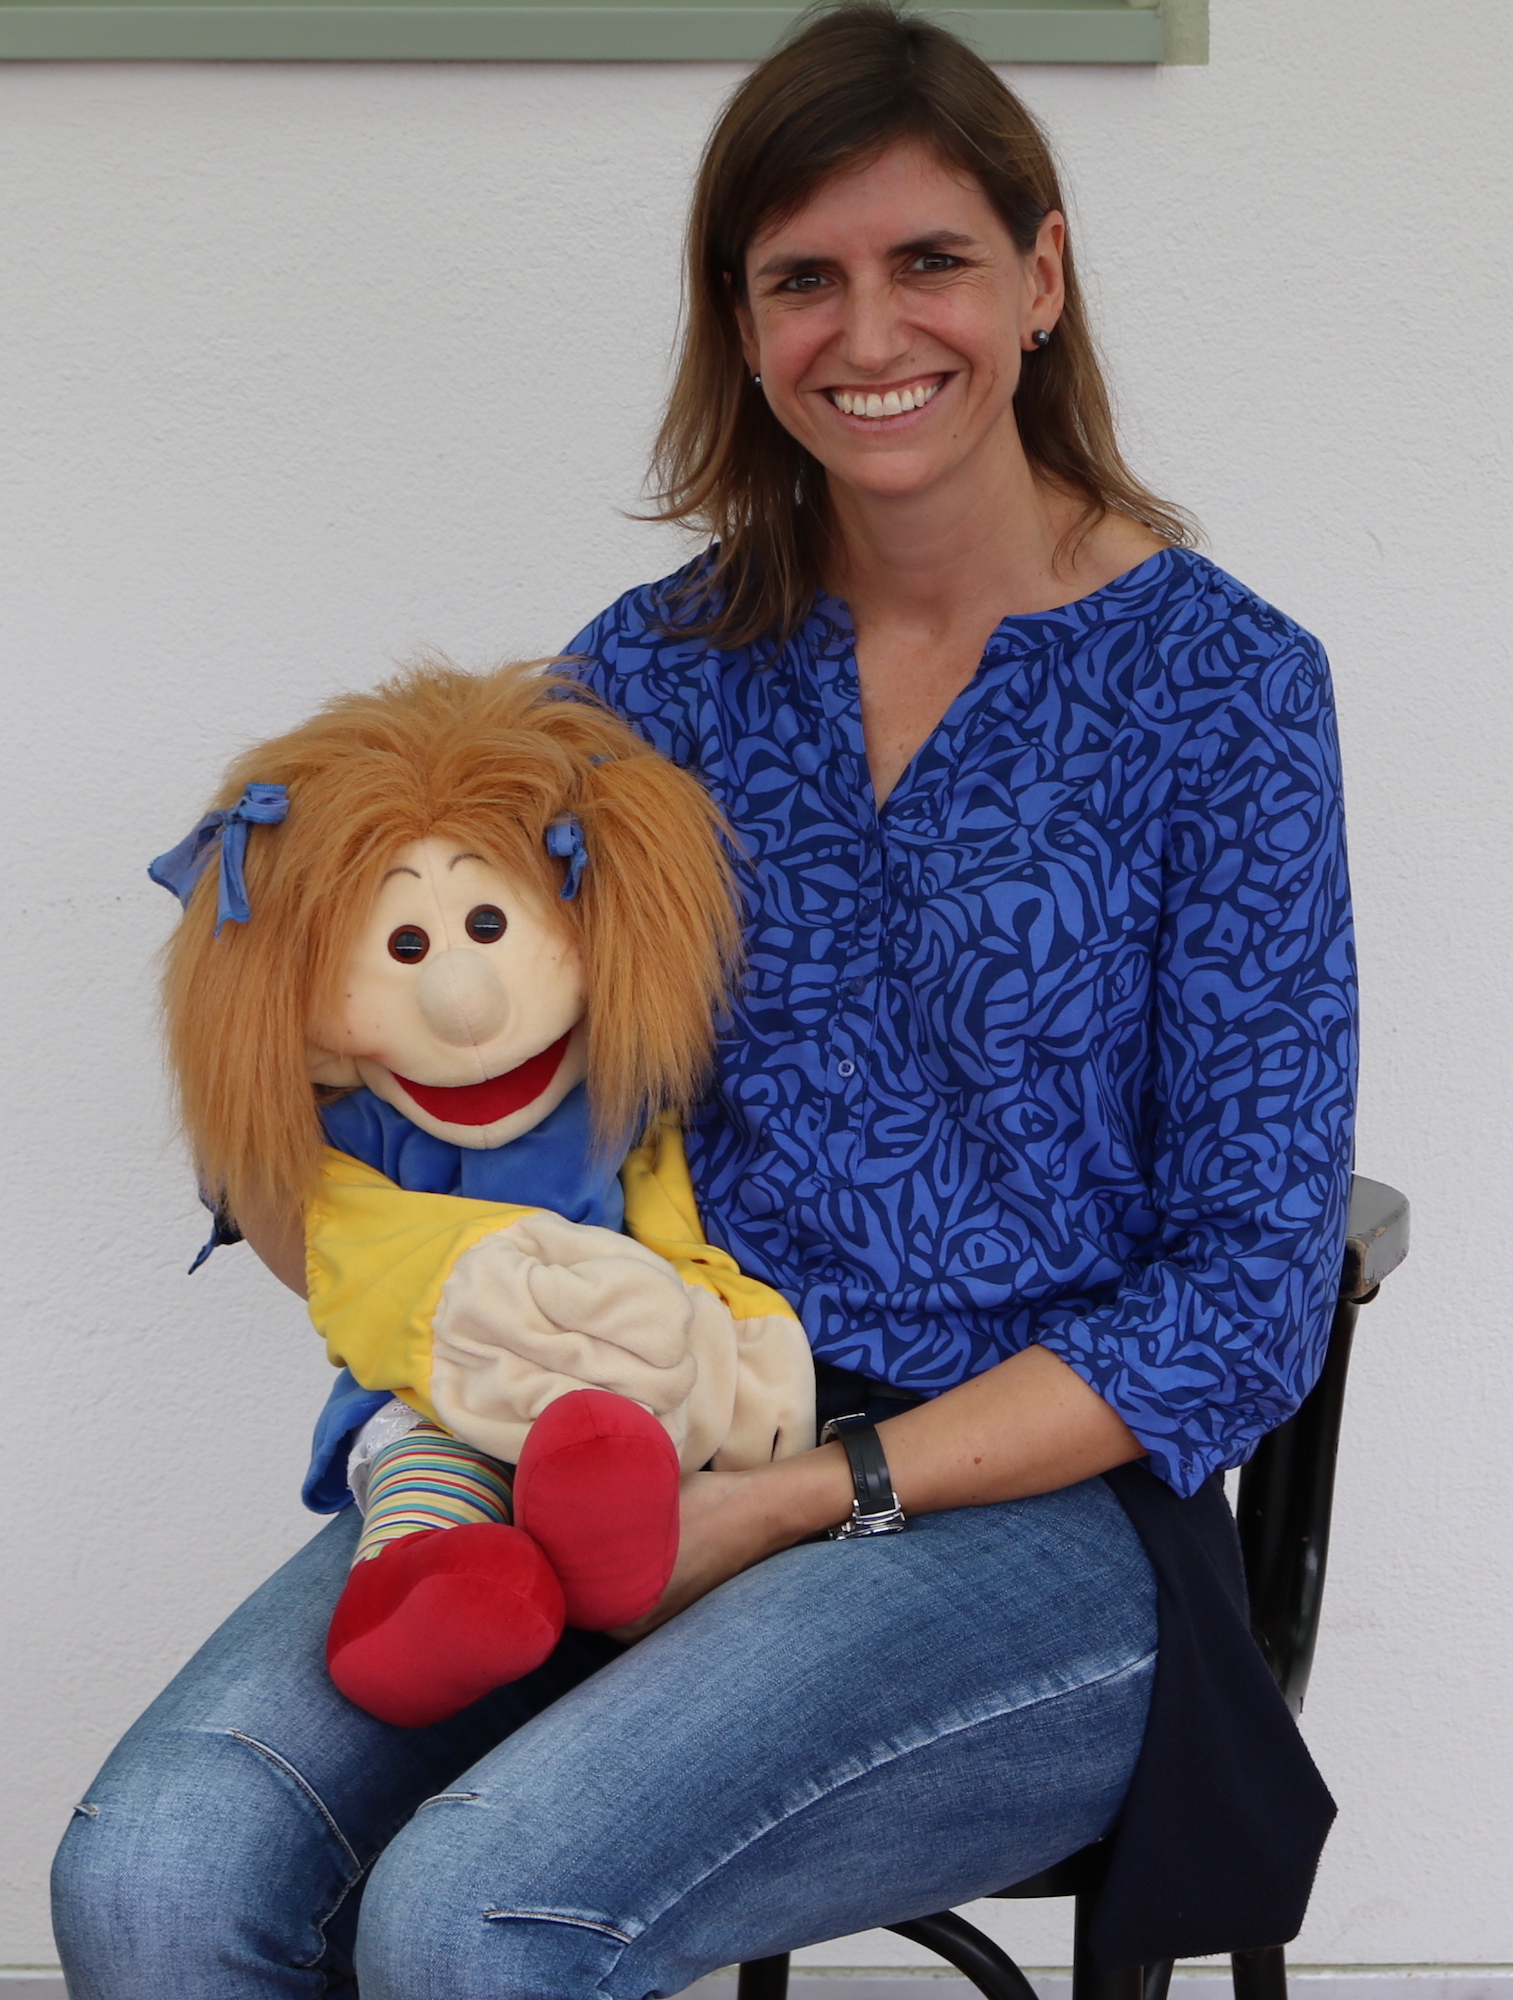 Anja Jacobs ist die Puppenspielerin für den Glauben. (c) Mira Otto